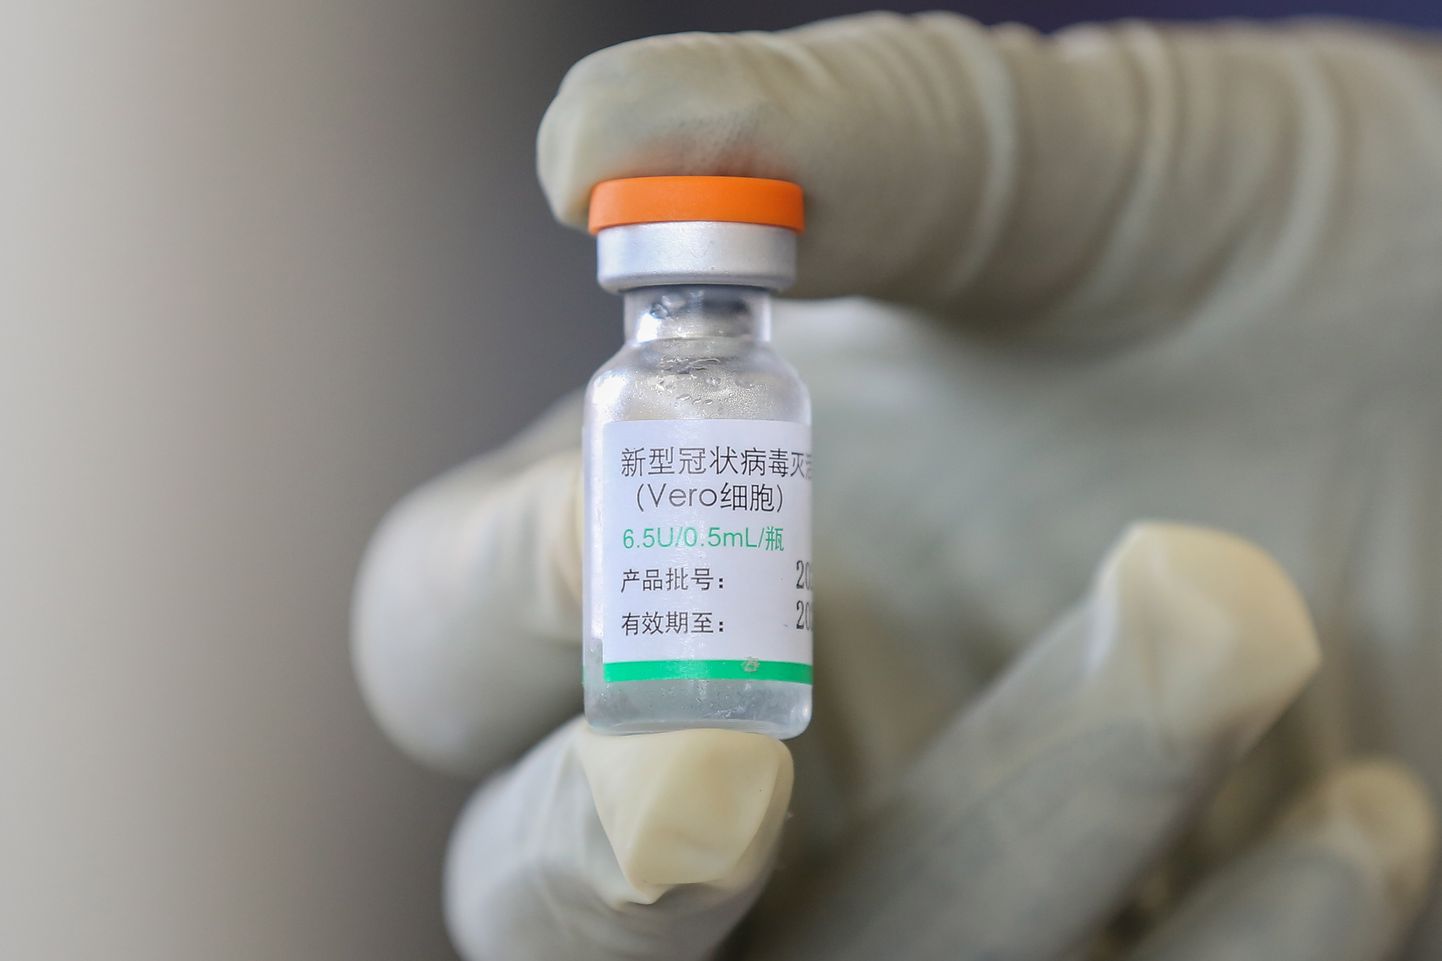 Hiina Sinopharmi vaktsiin.